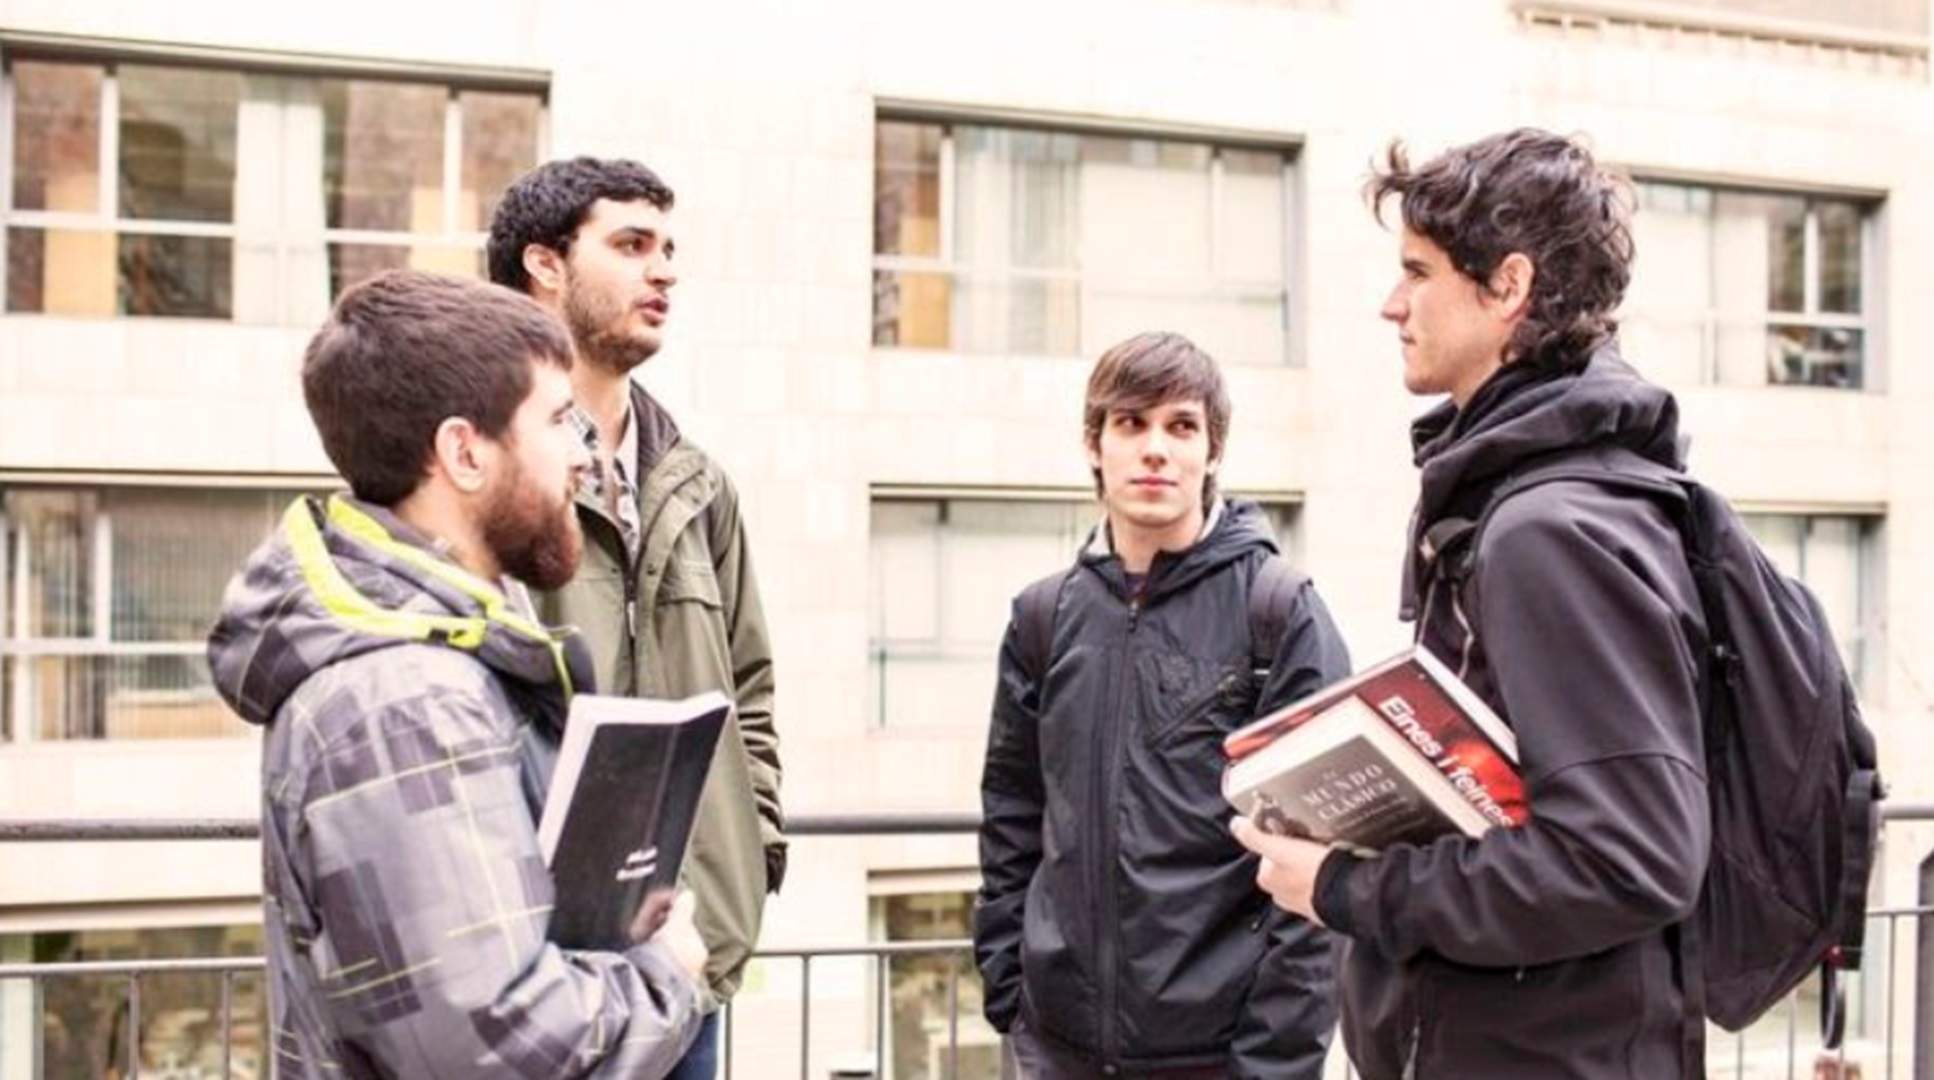 Barcelona impulsa l’ocupació juvenil i la recerca de doctorats amb una nova línia d’ajuts